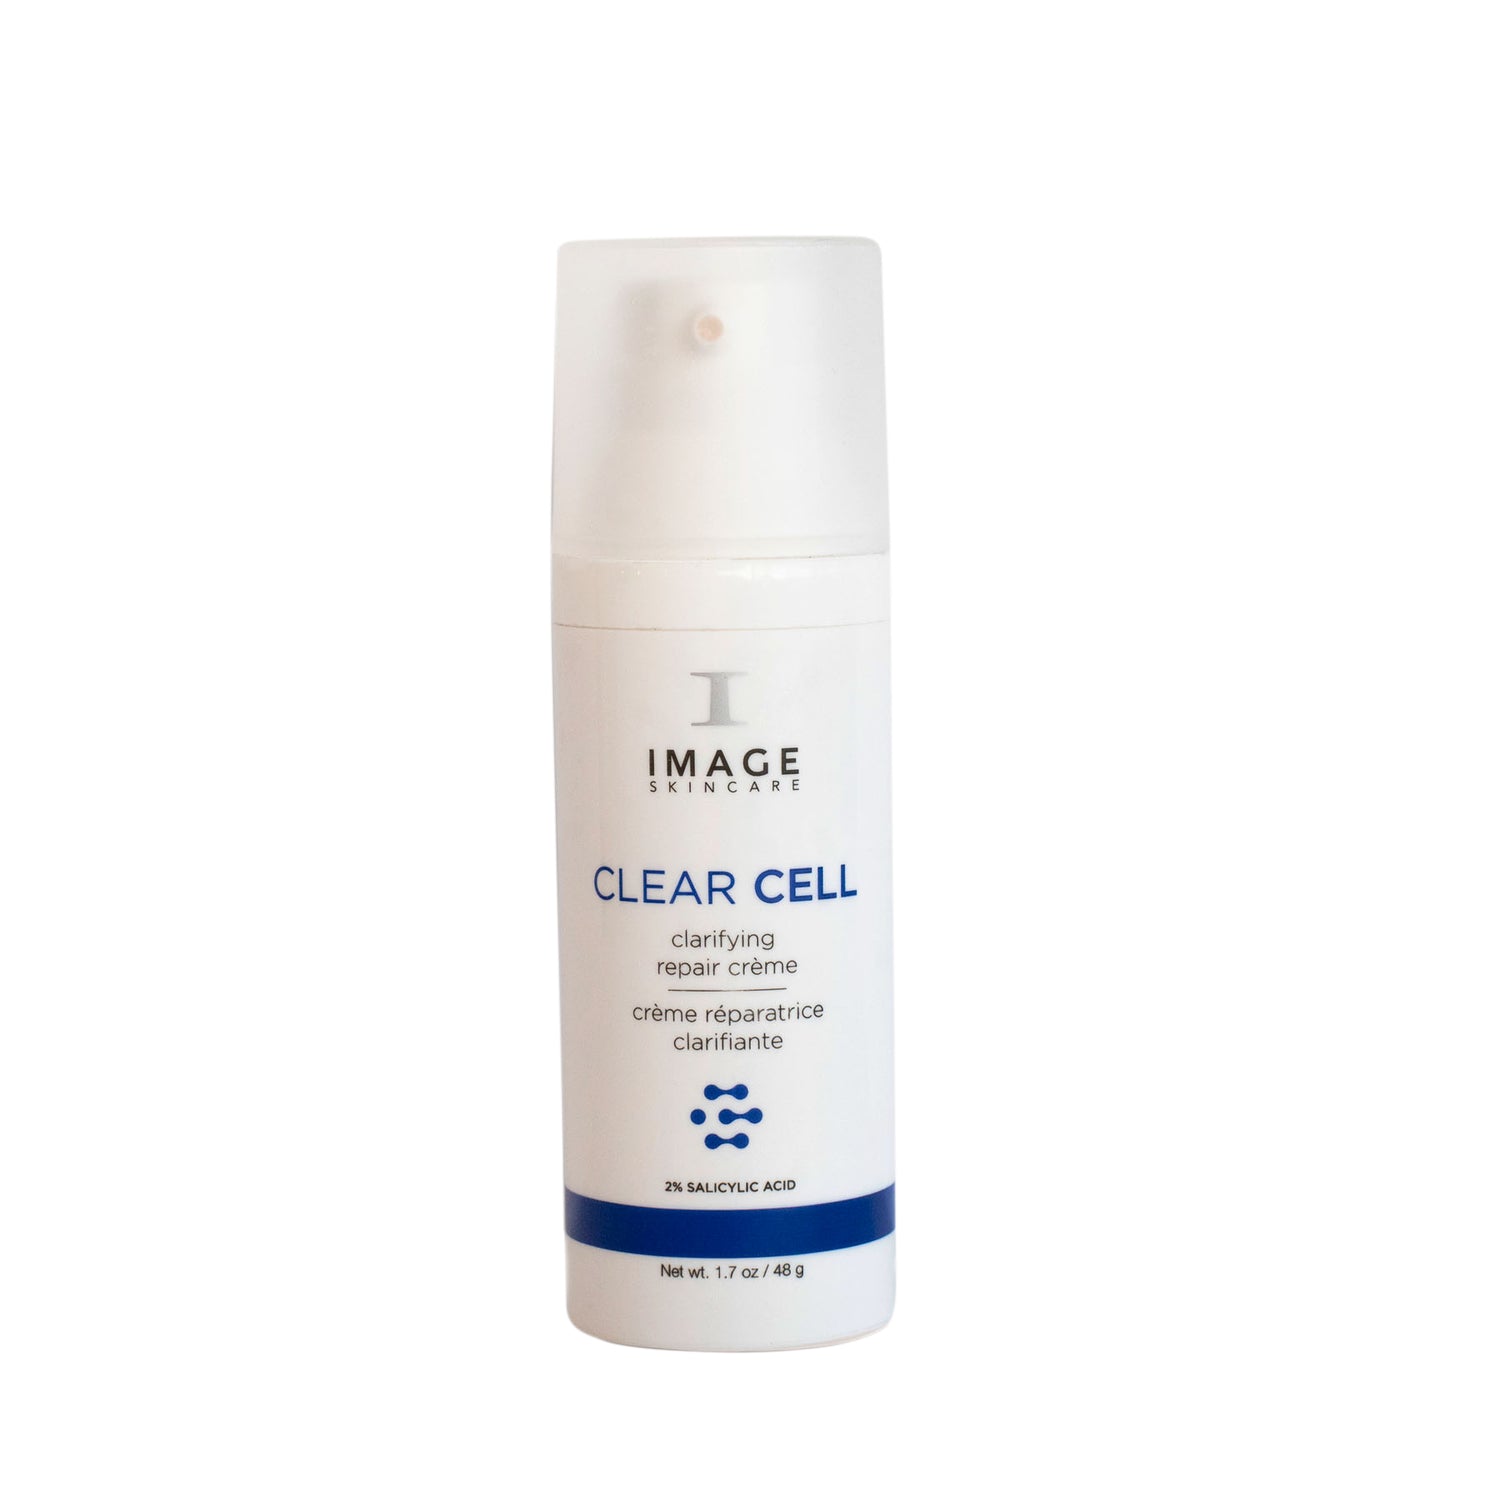 CLEAR CELL - Clarifying Repair Crème